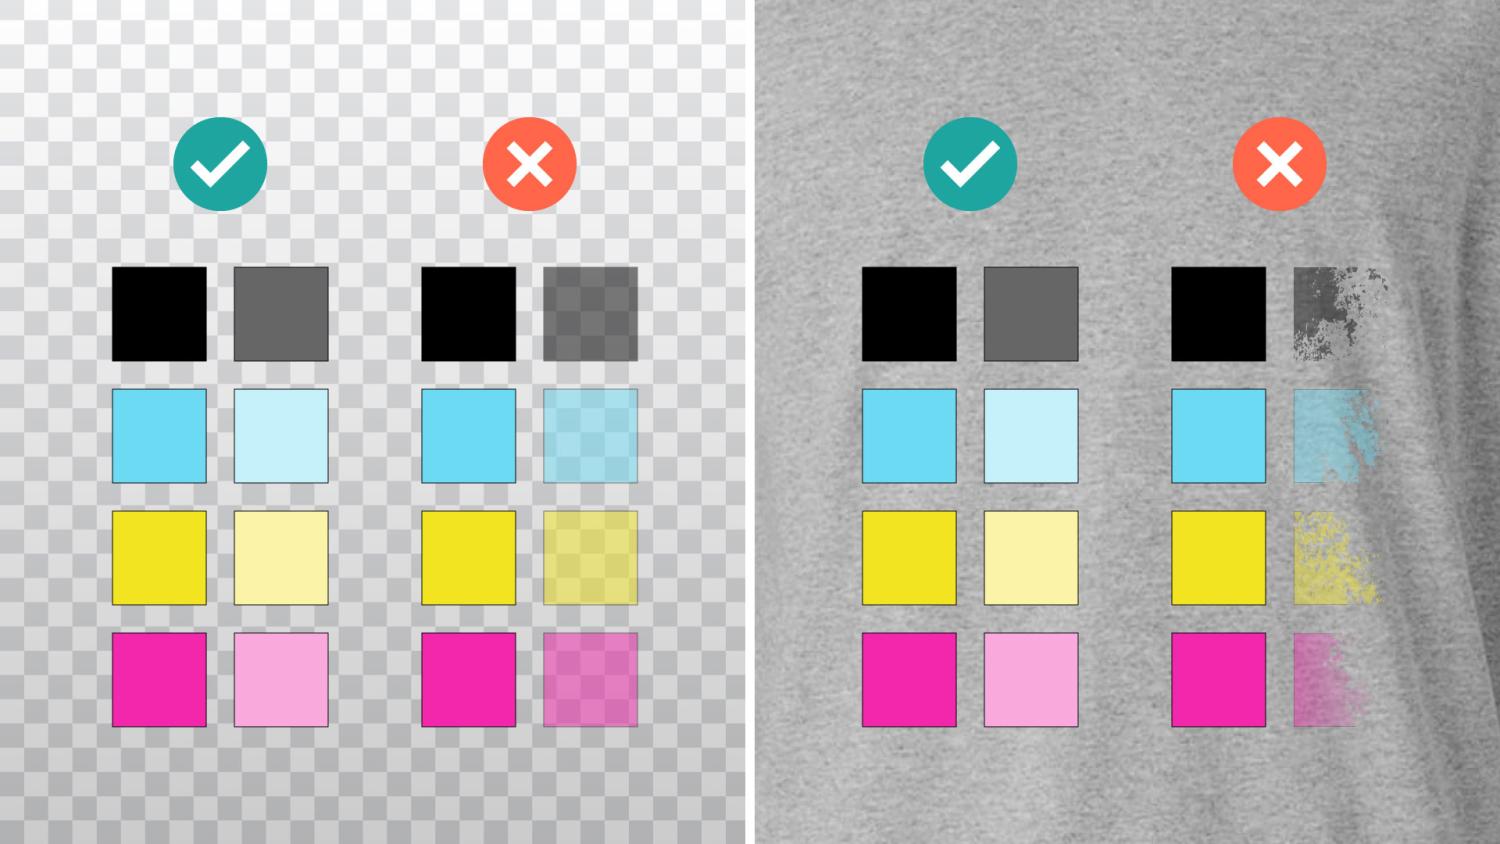 Utilizza tinte unite per i colori in trasparenza.